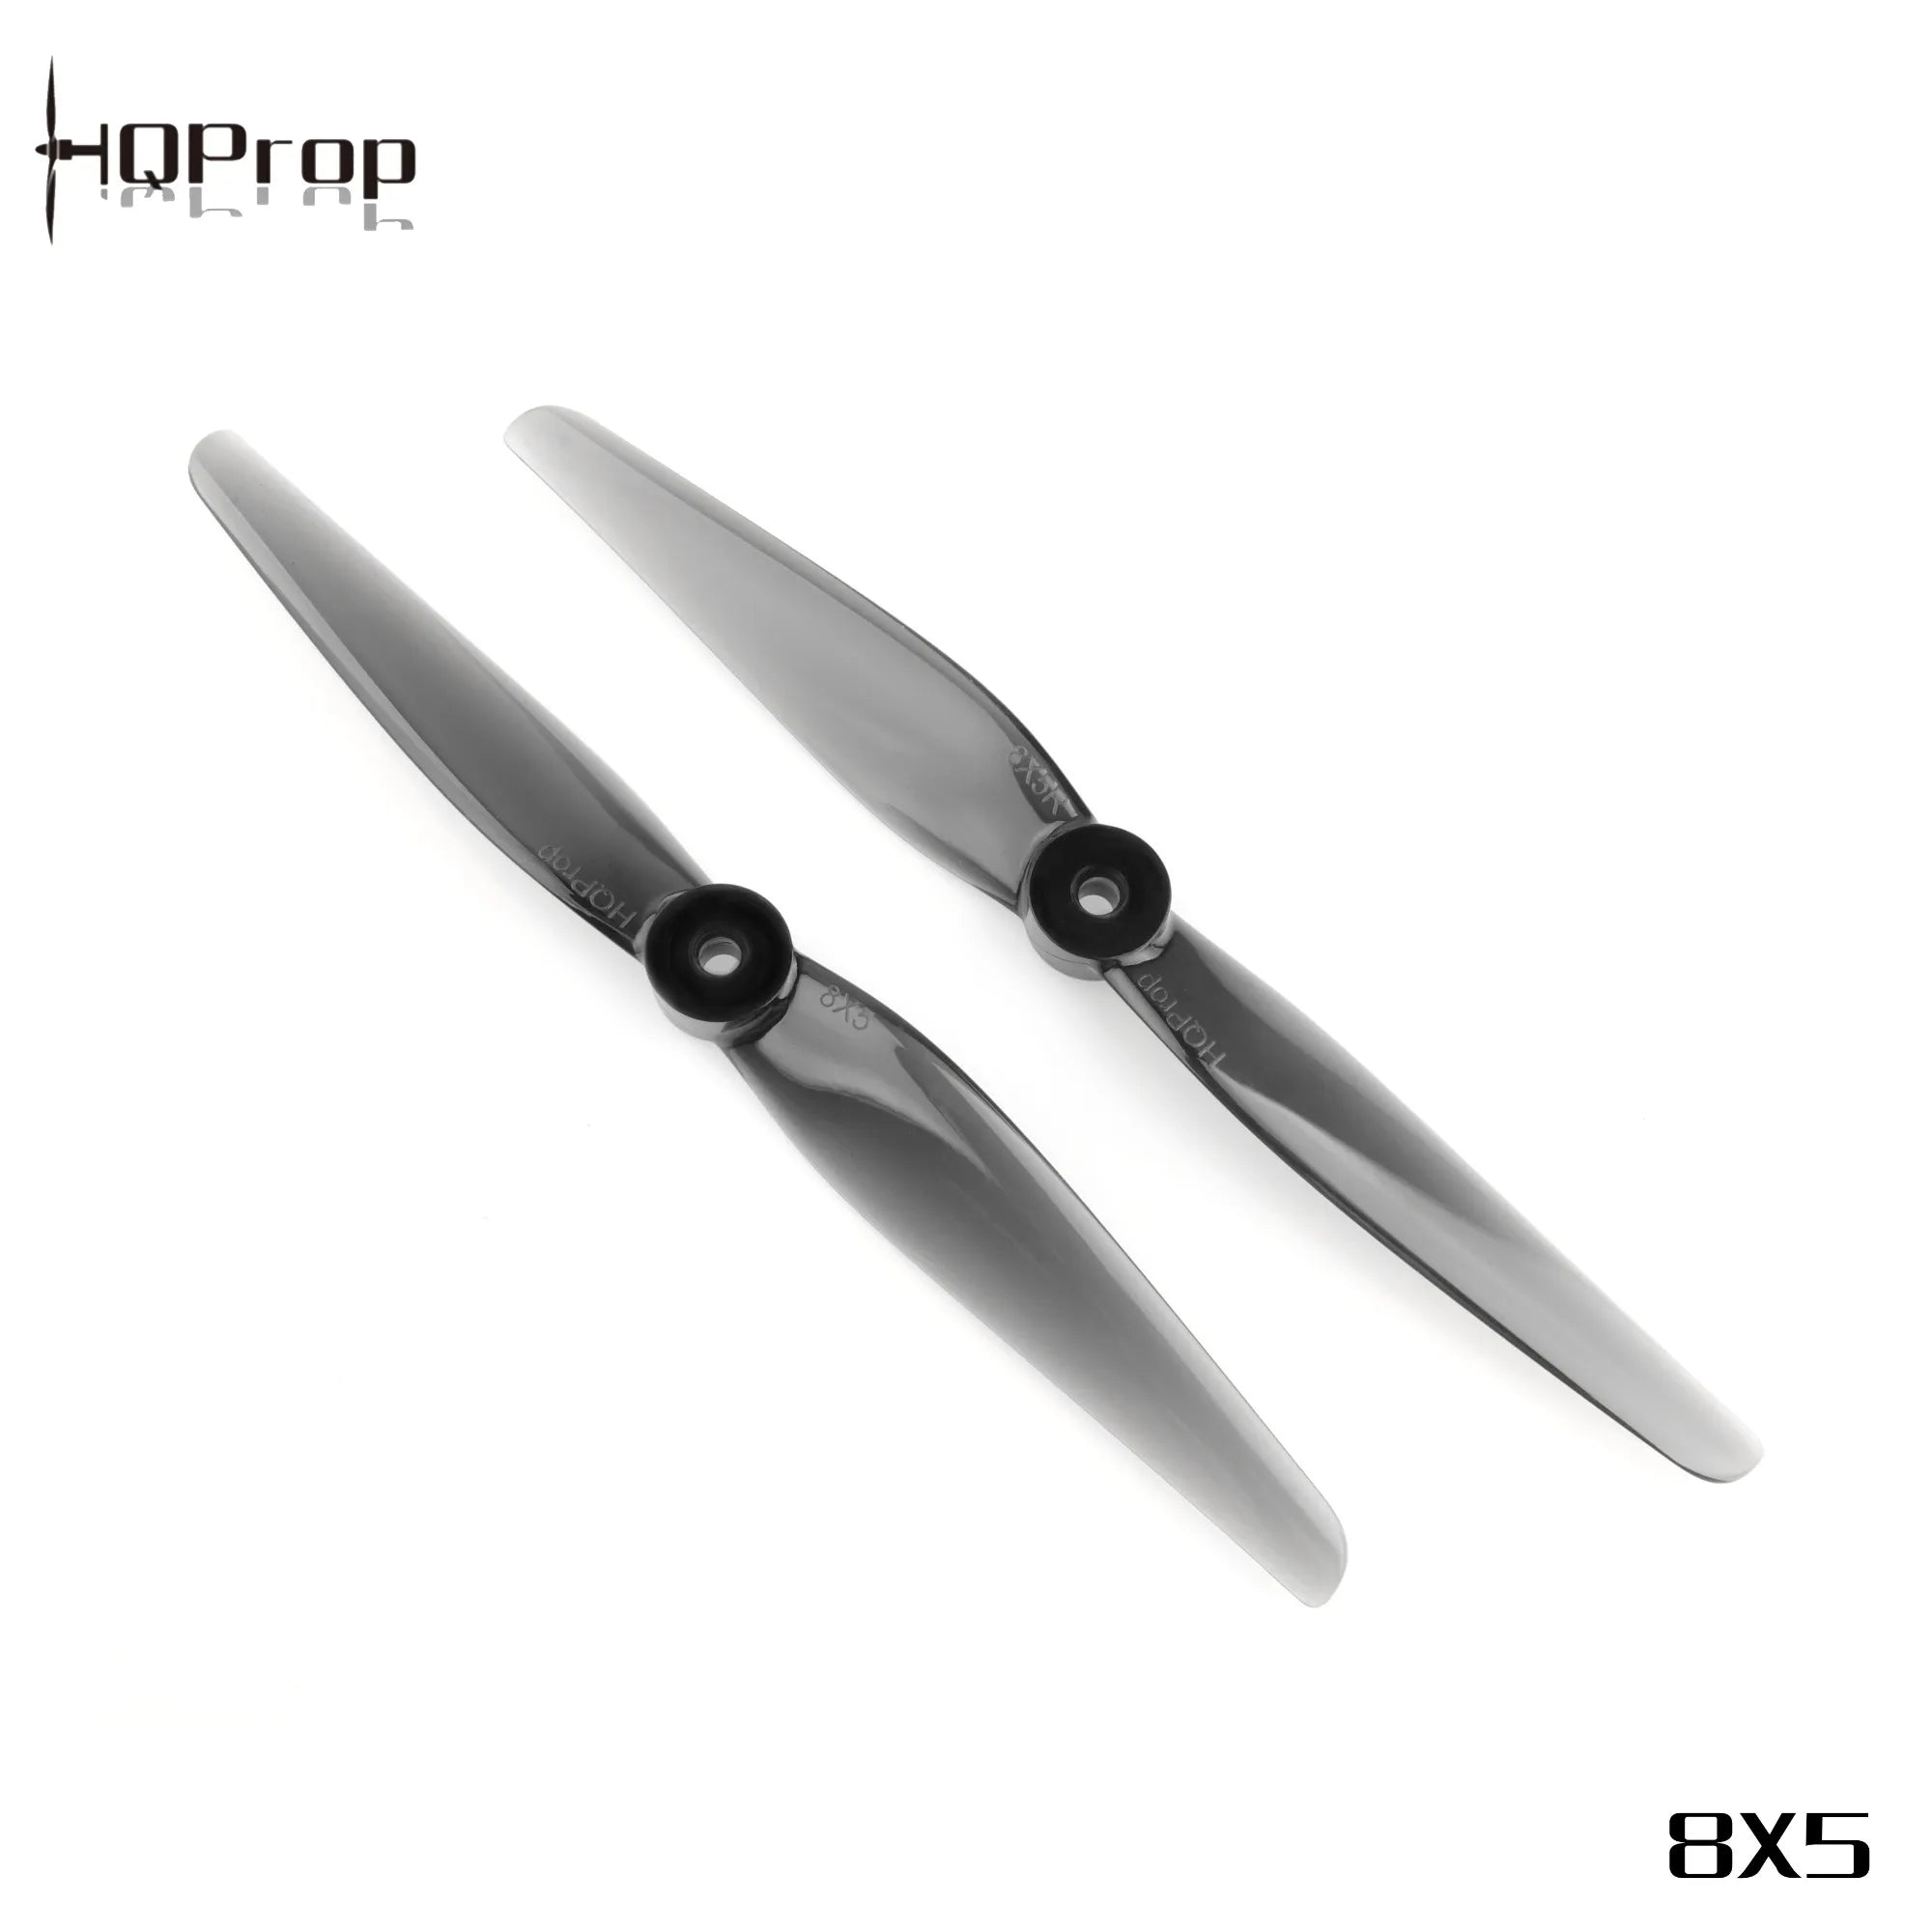 HQProp 8x5 Propeller